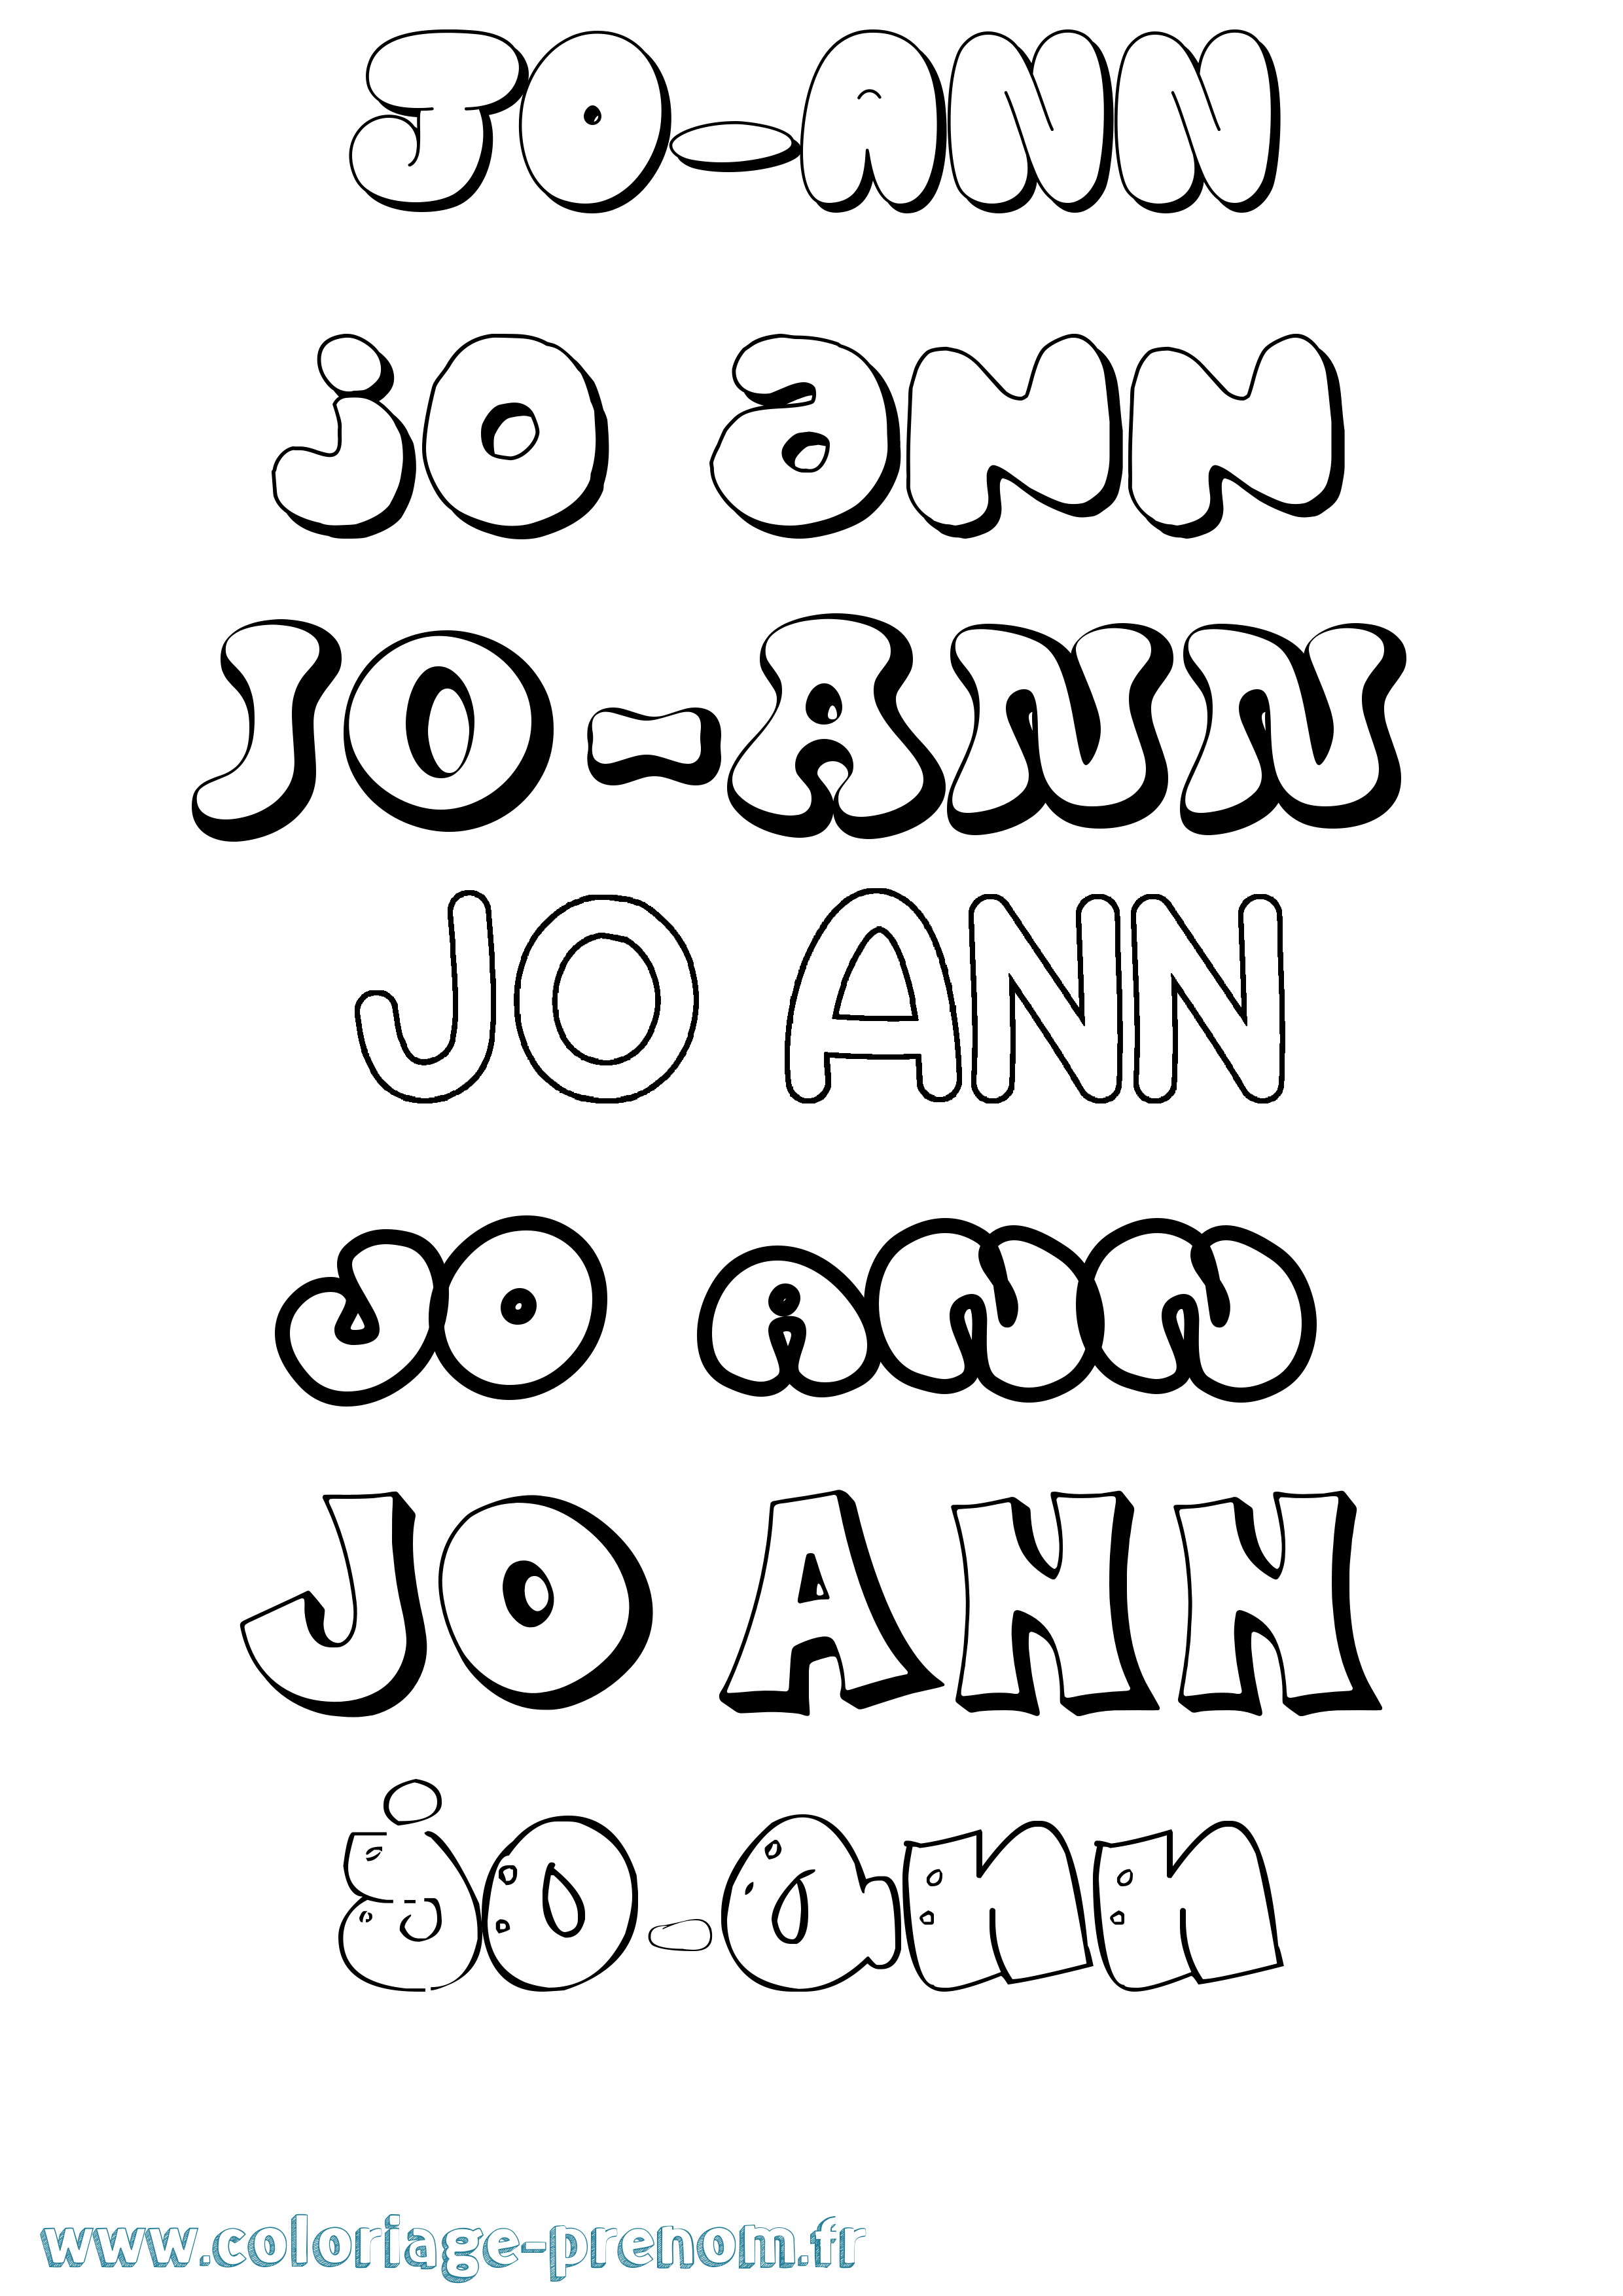 Coloriage prénom Jo-Ann Bubble